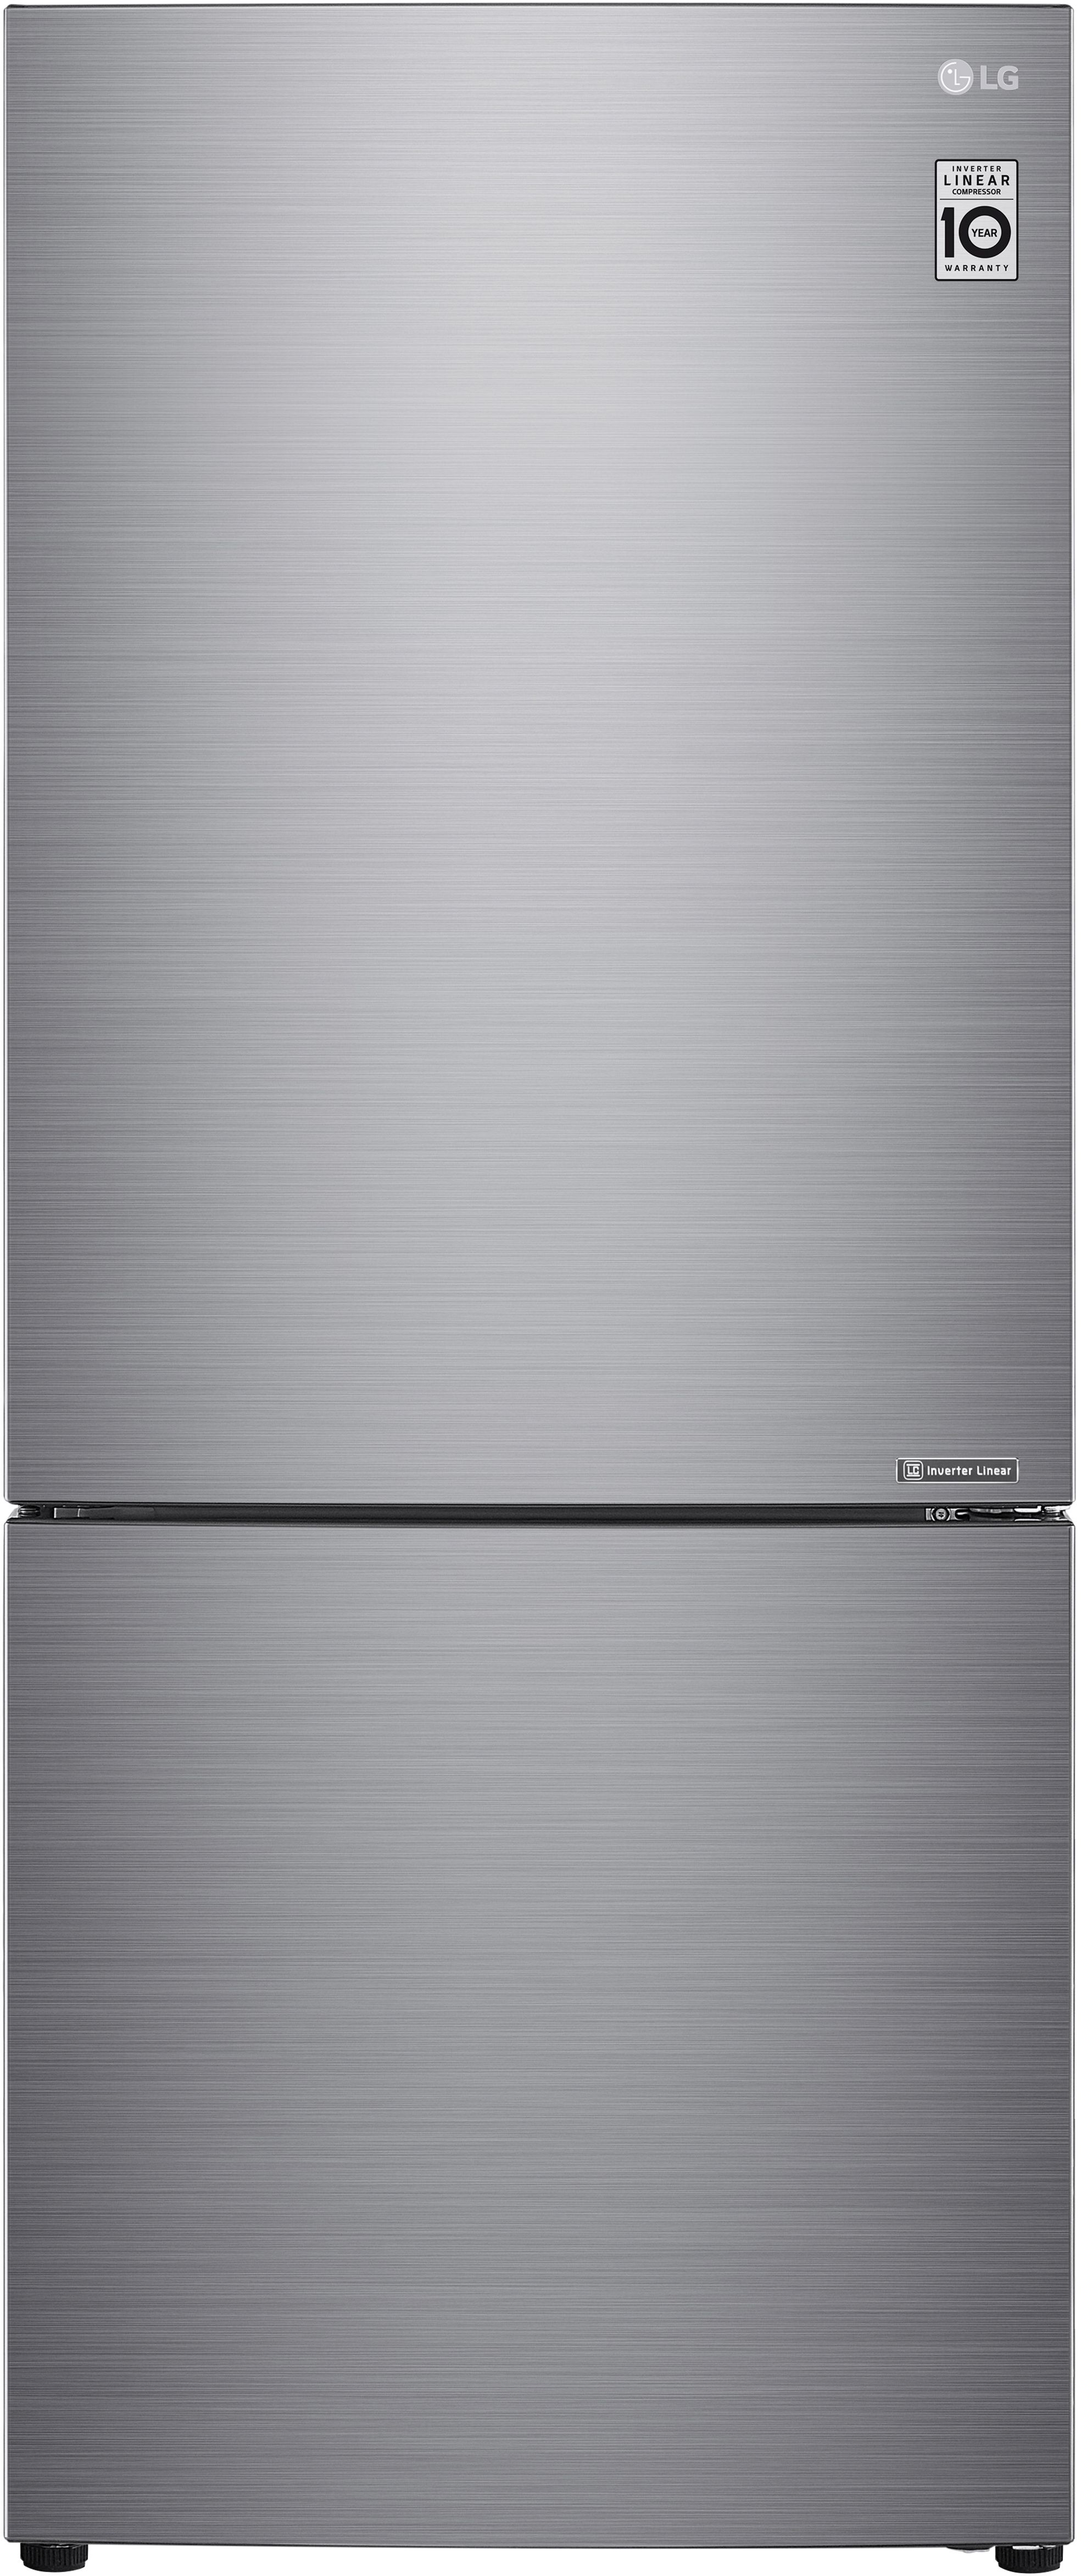 LG 14.7 Cu. Ft. Platinum Silver PCM Counter Depth Bottom Freezer Refrigerator